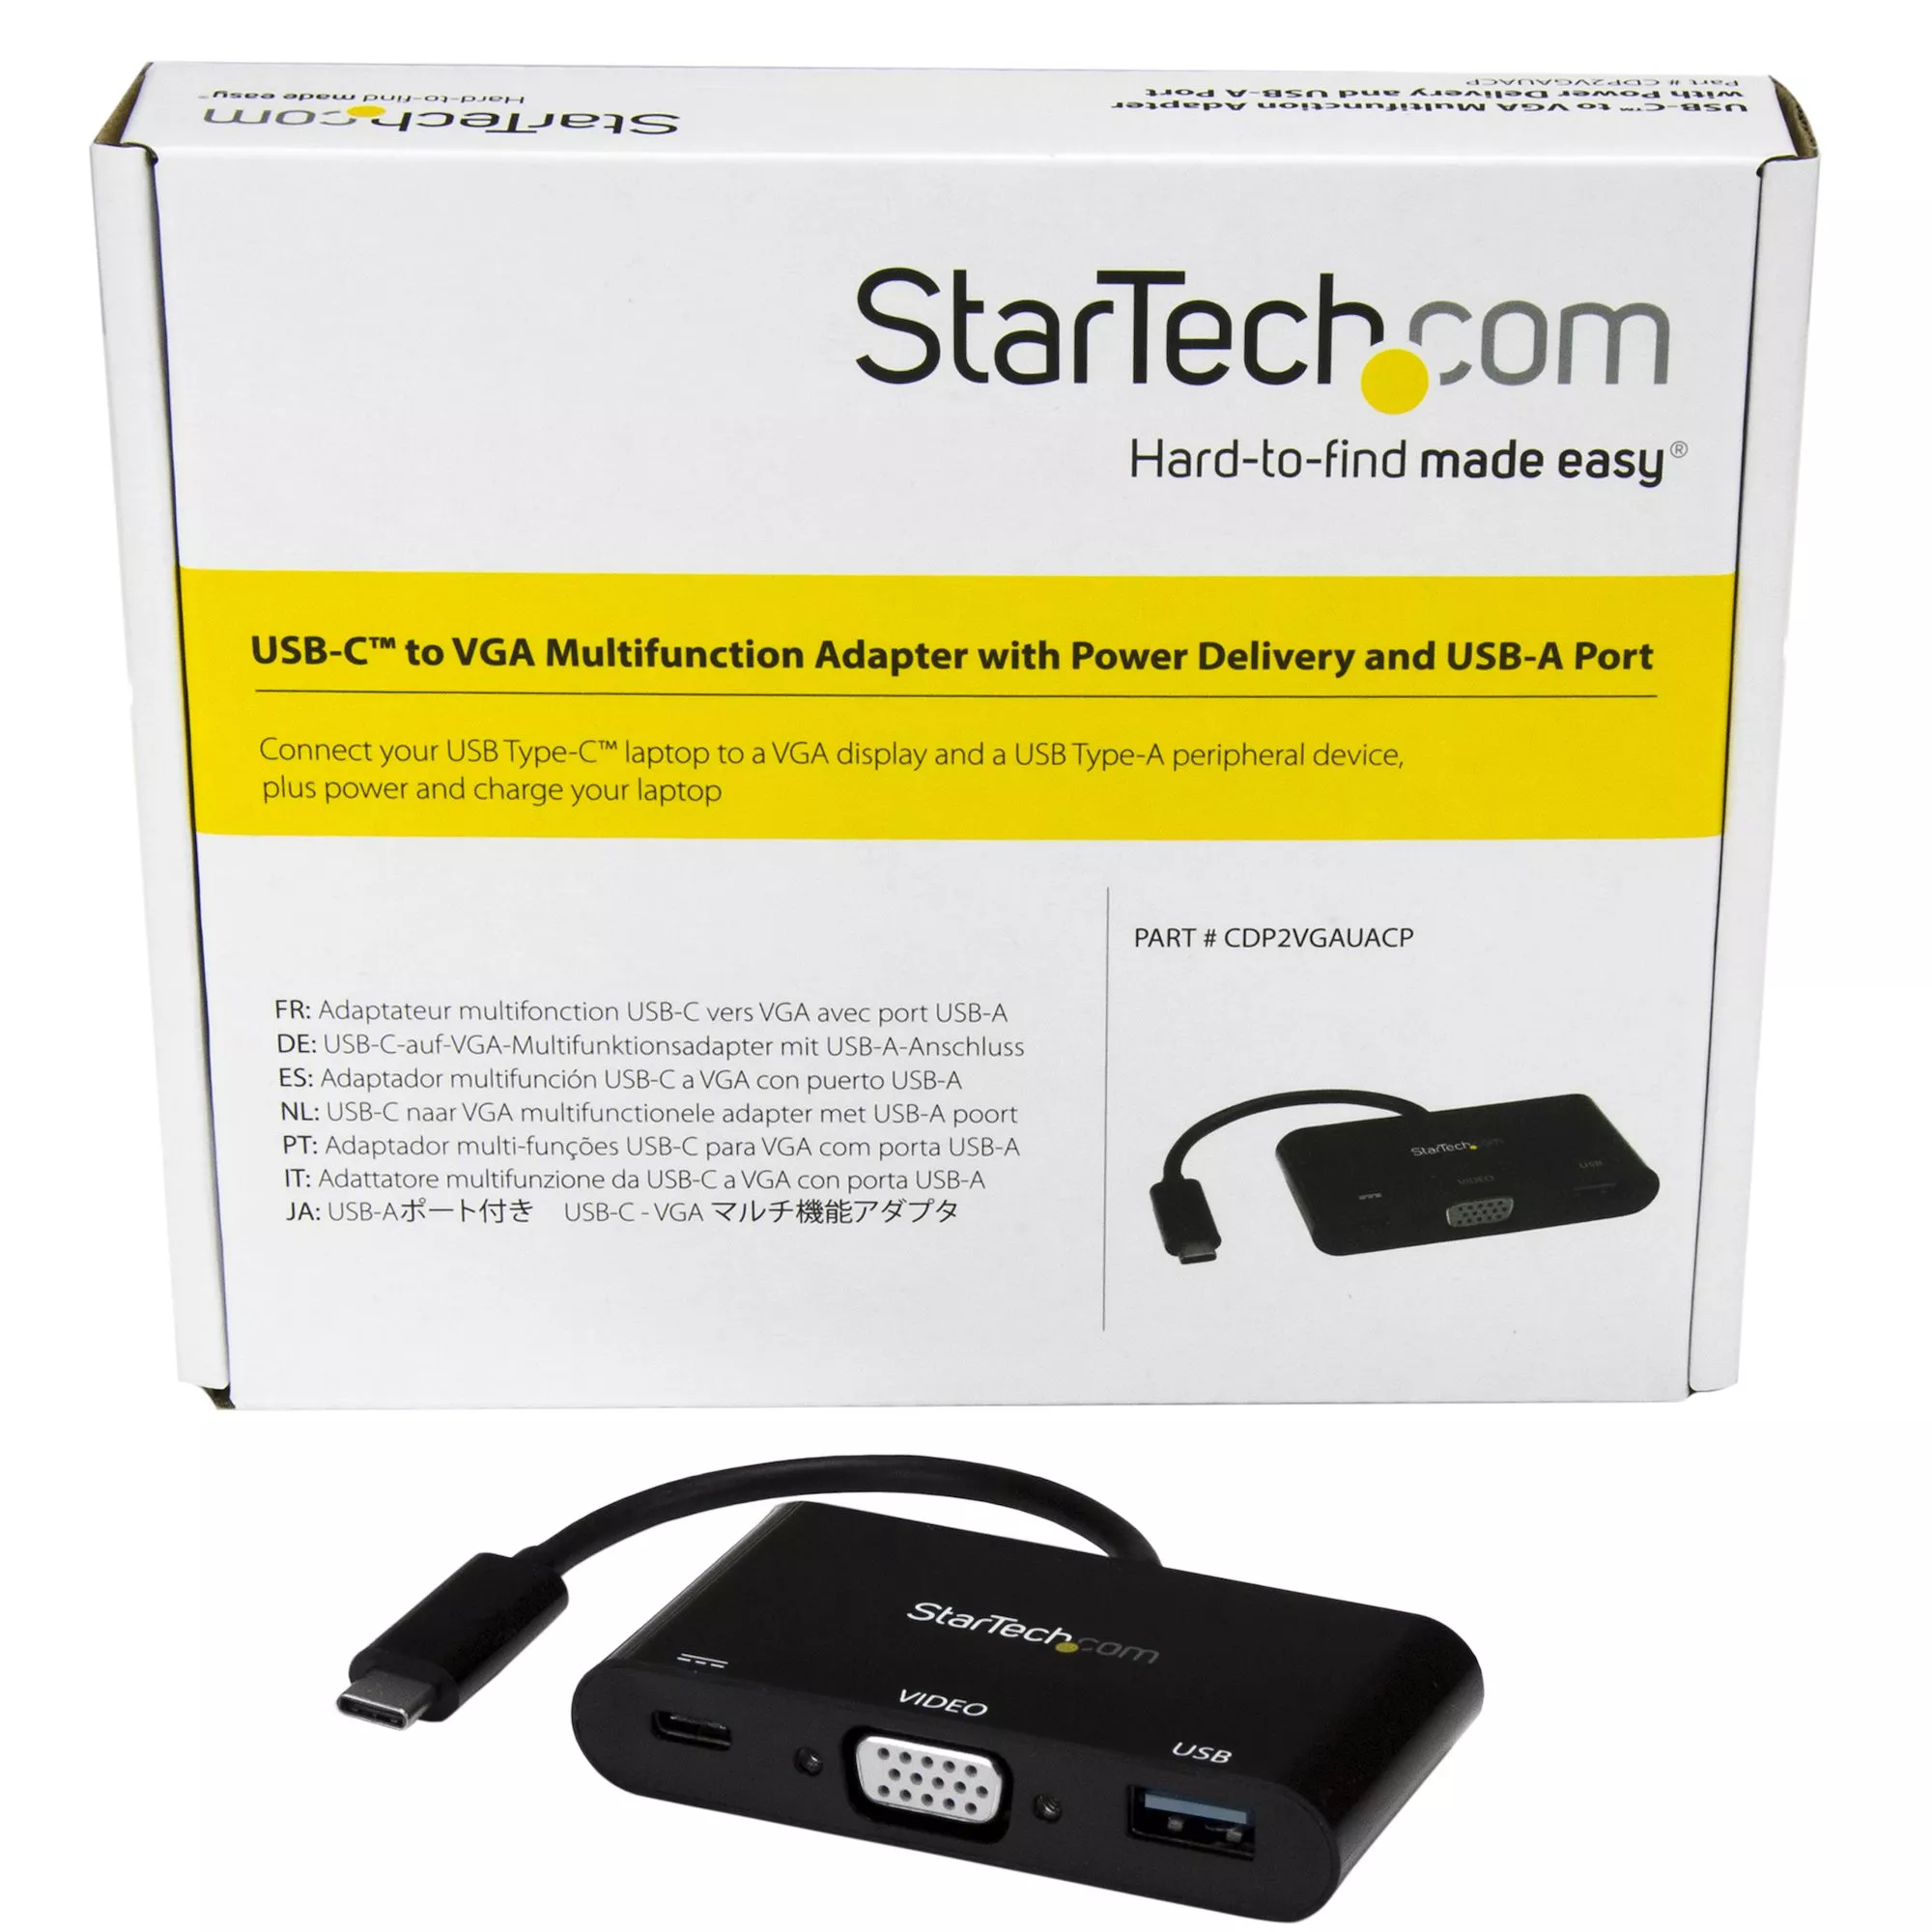 Vente StarTech.com Adaptateur multifonction USB-C vers VGA avec StarTech.com au meilleur prix - visuel 6